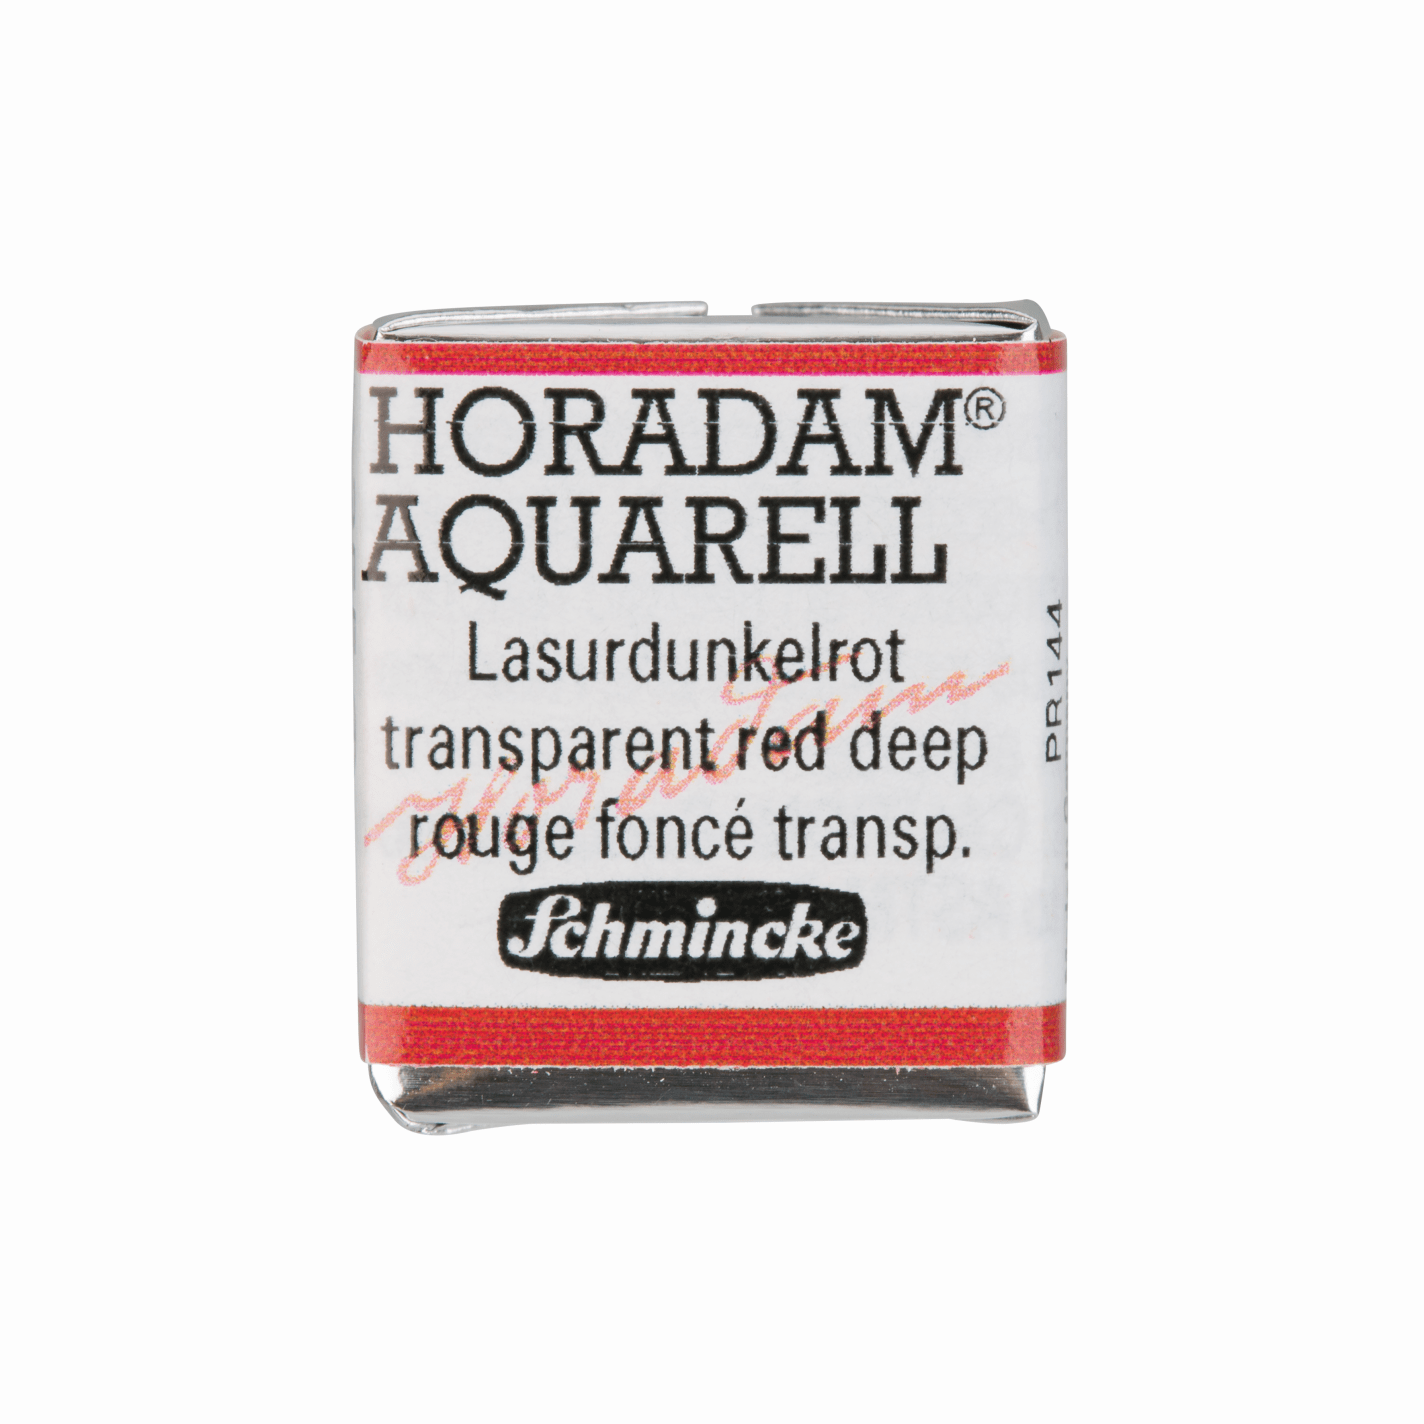 Schmincke Horadam Aquarell pans 1/2 pan Transparent Red Deep